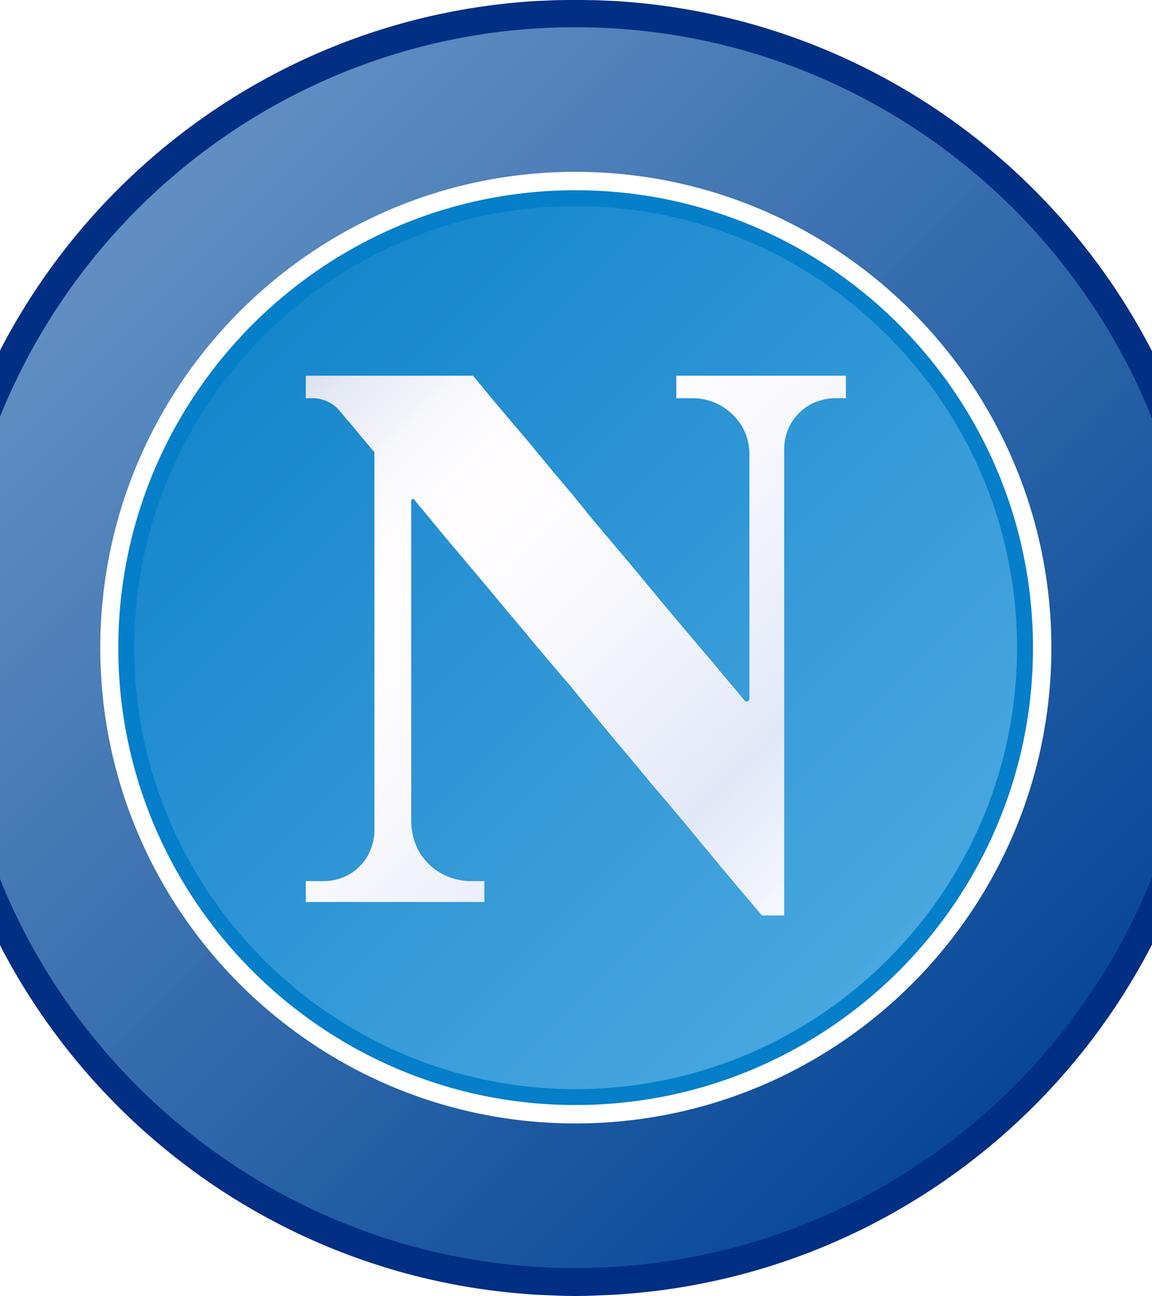 Das Logo des Fußballvereins SSC Neapel